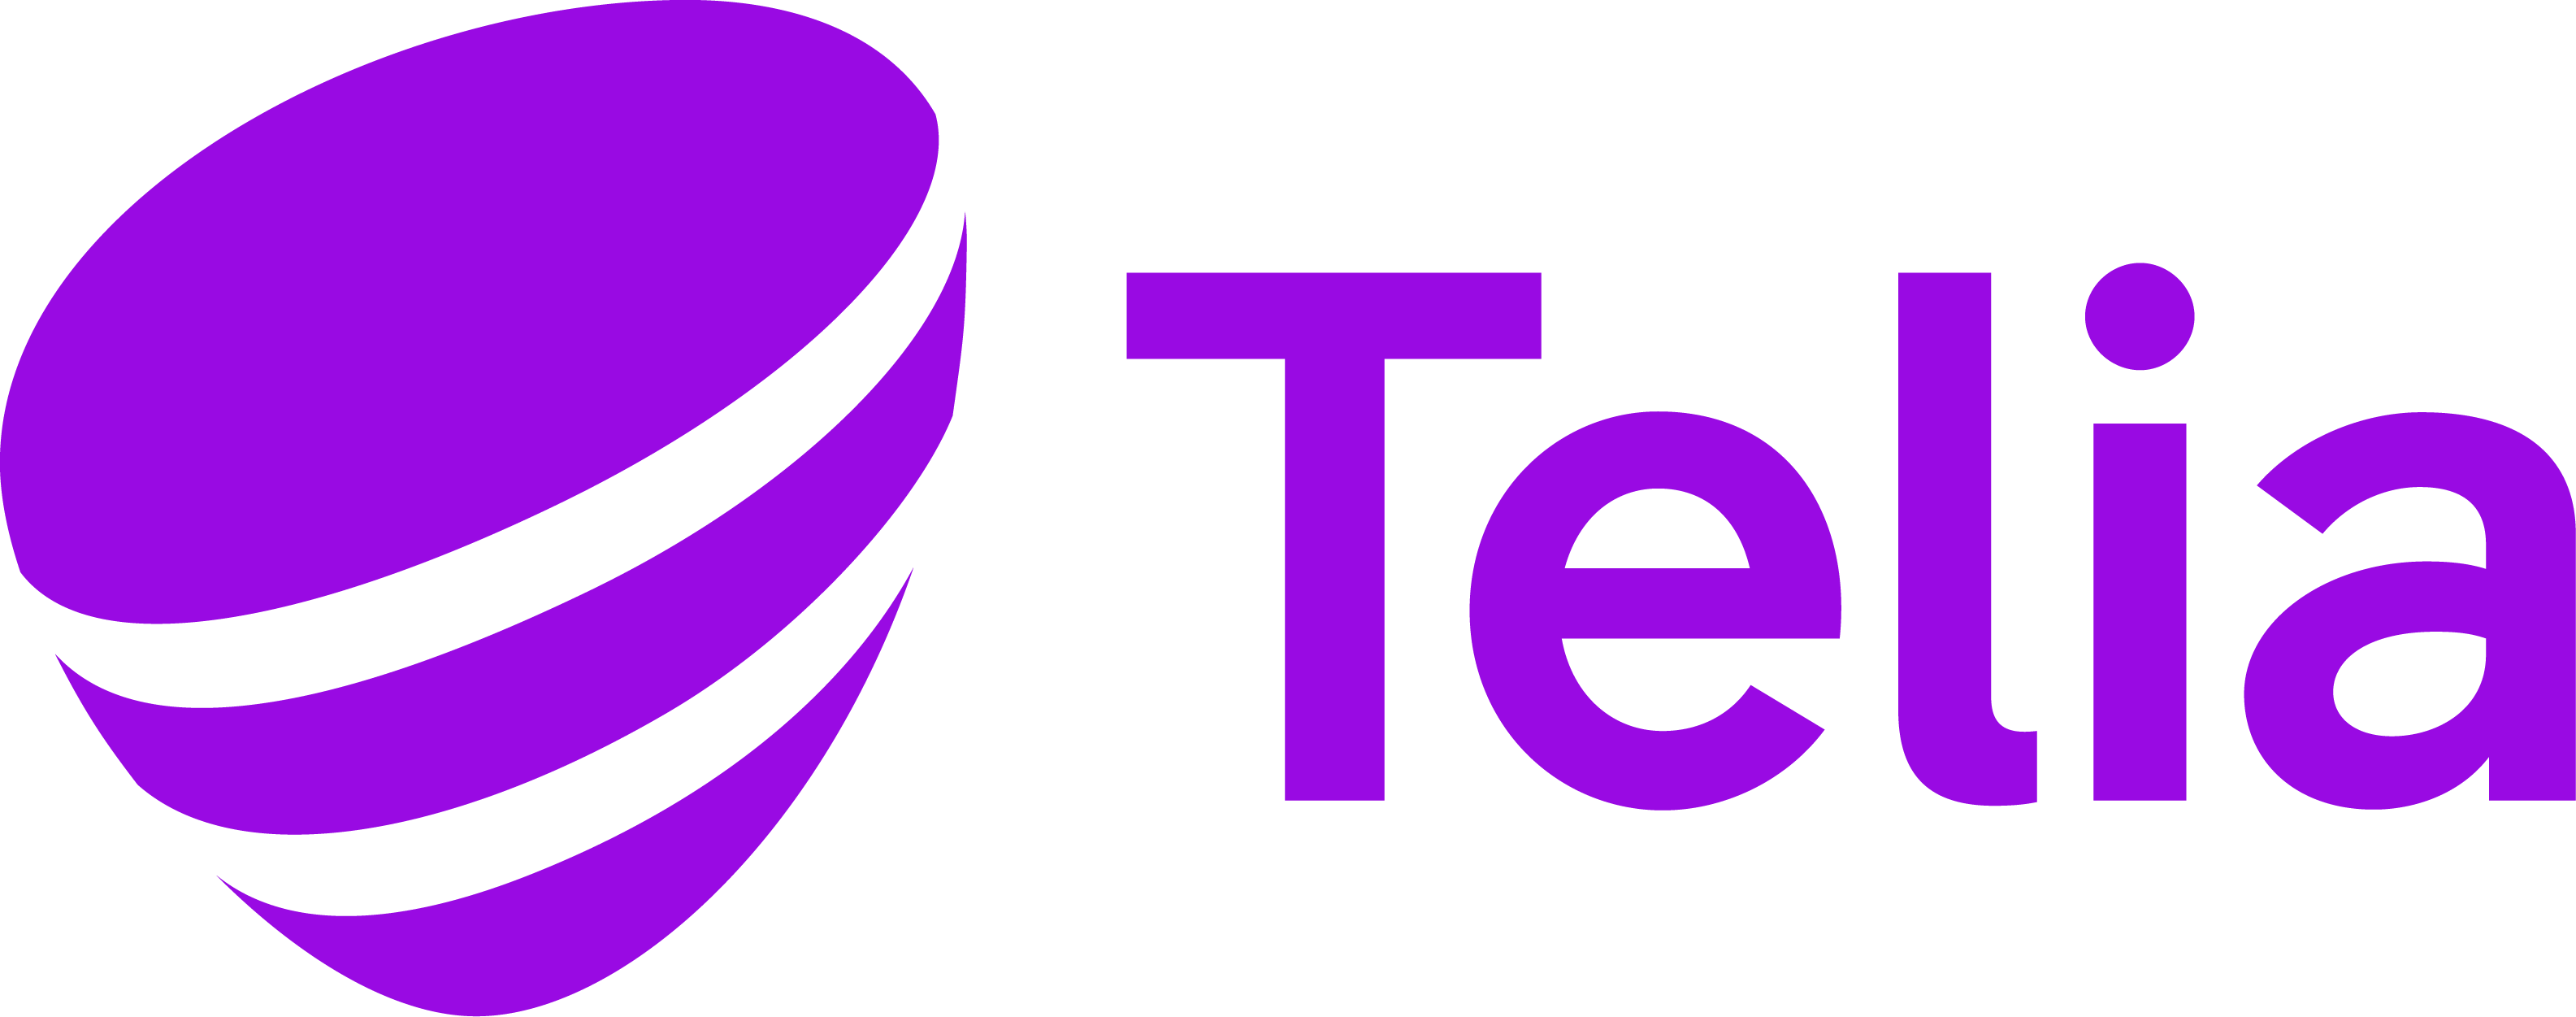 Telia_Logotype_RGB_Purple